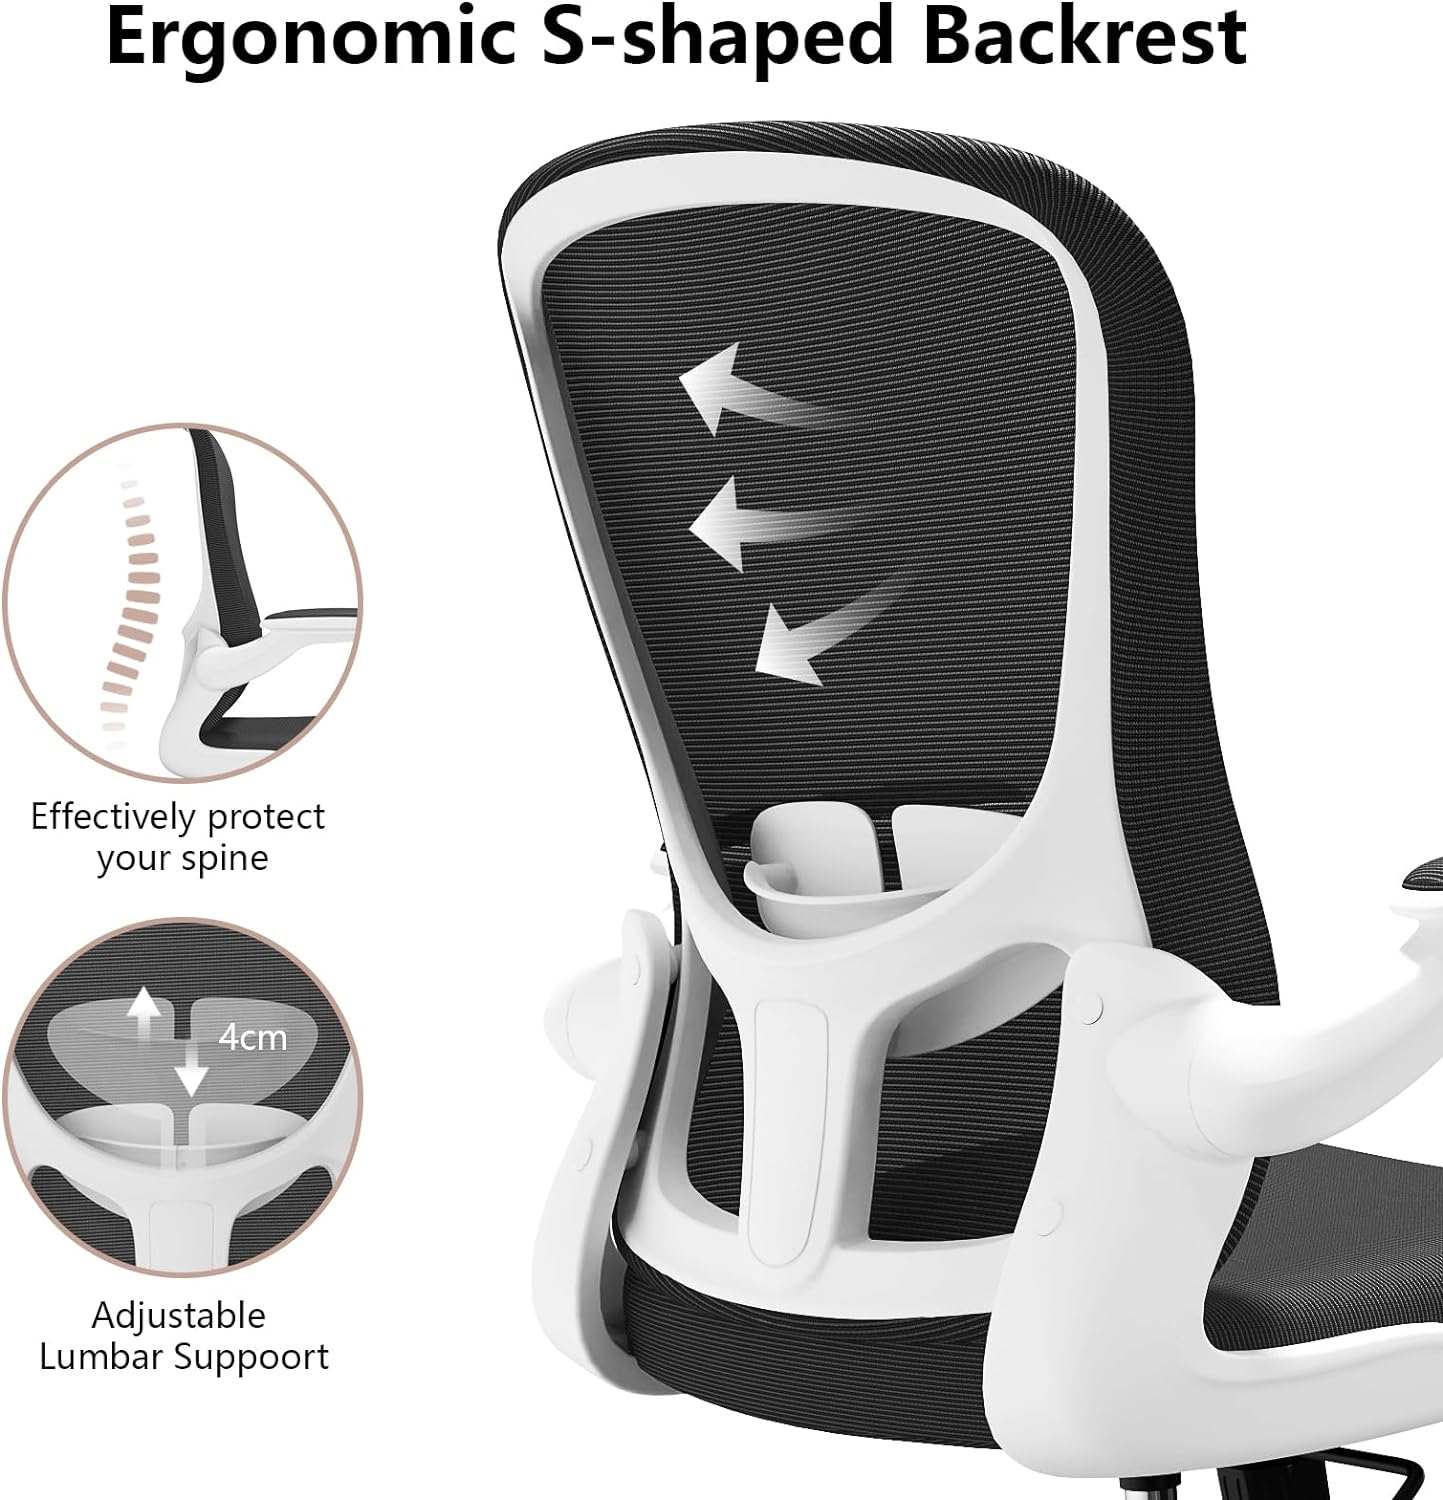 Silla de oficina ergonómica, cómoda silla giratoria para oficina en casa, silla